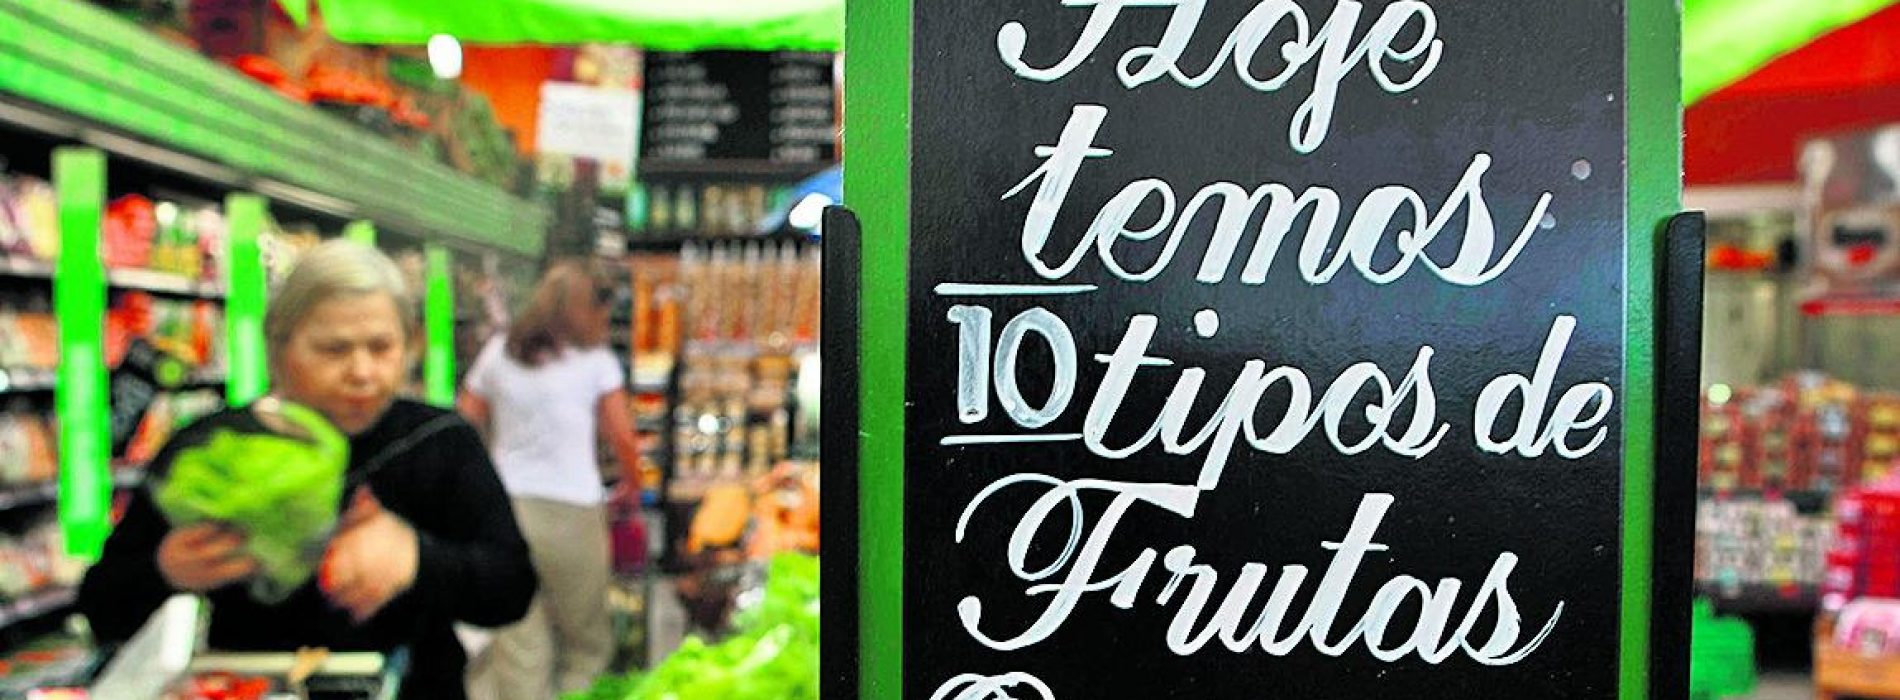 Supermercados optam por agricultor local para rastrear melhor orgânicos